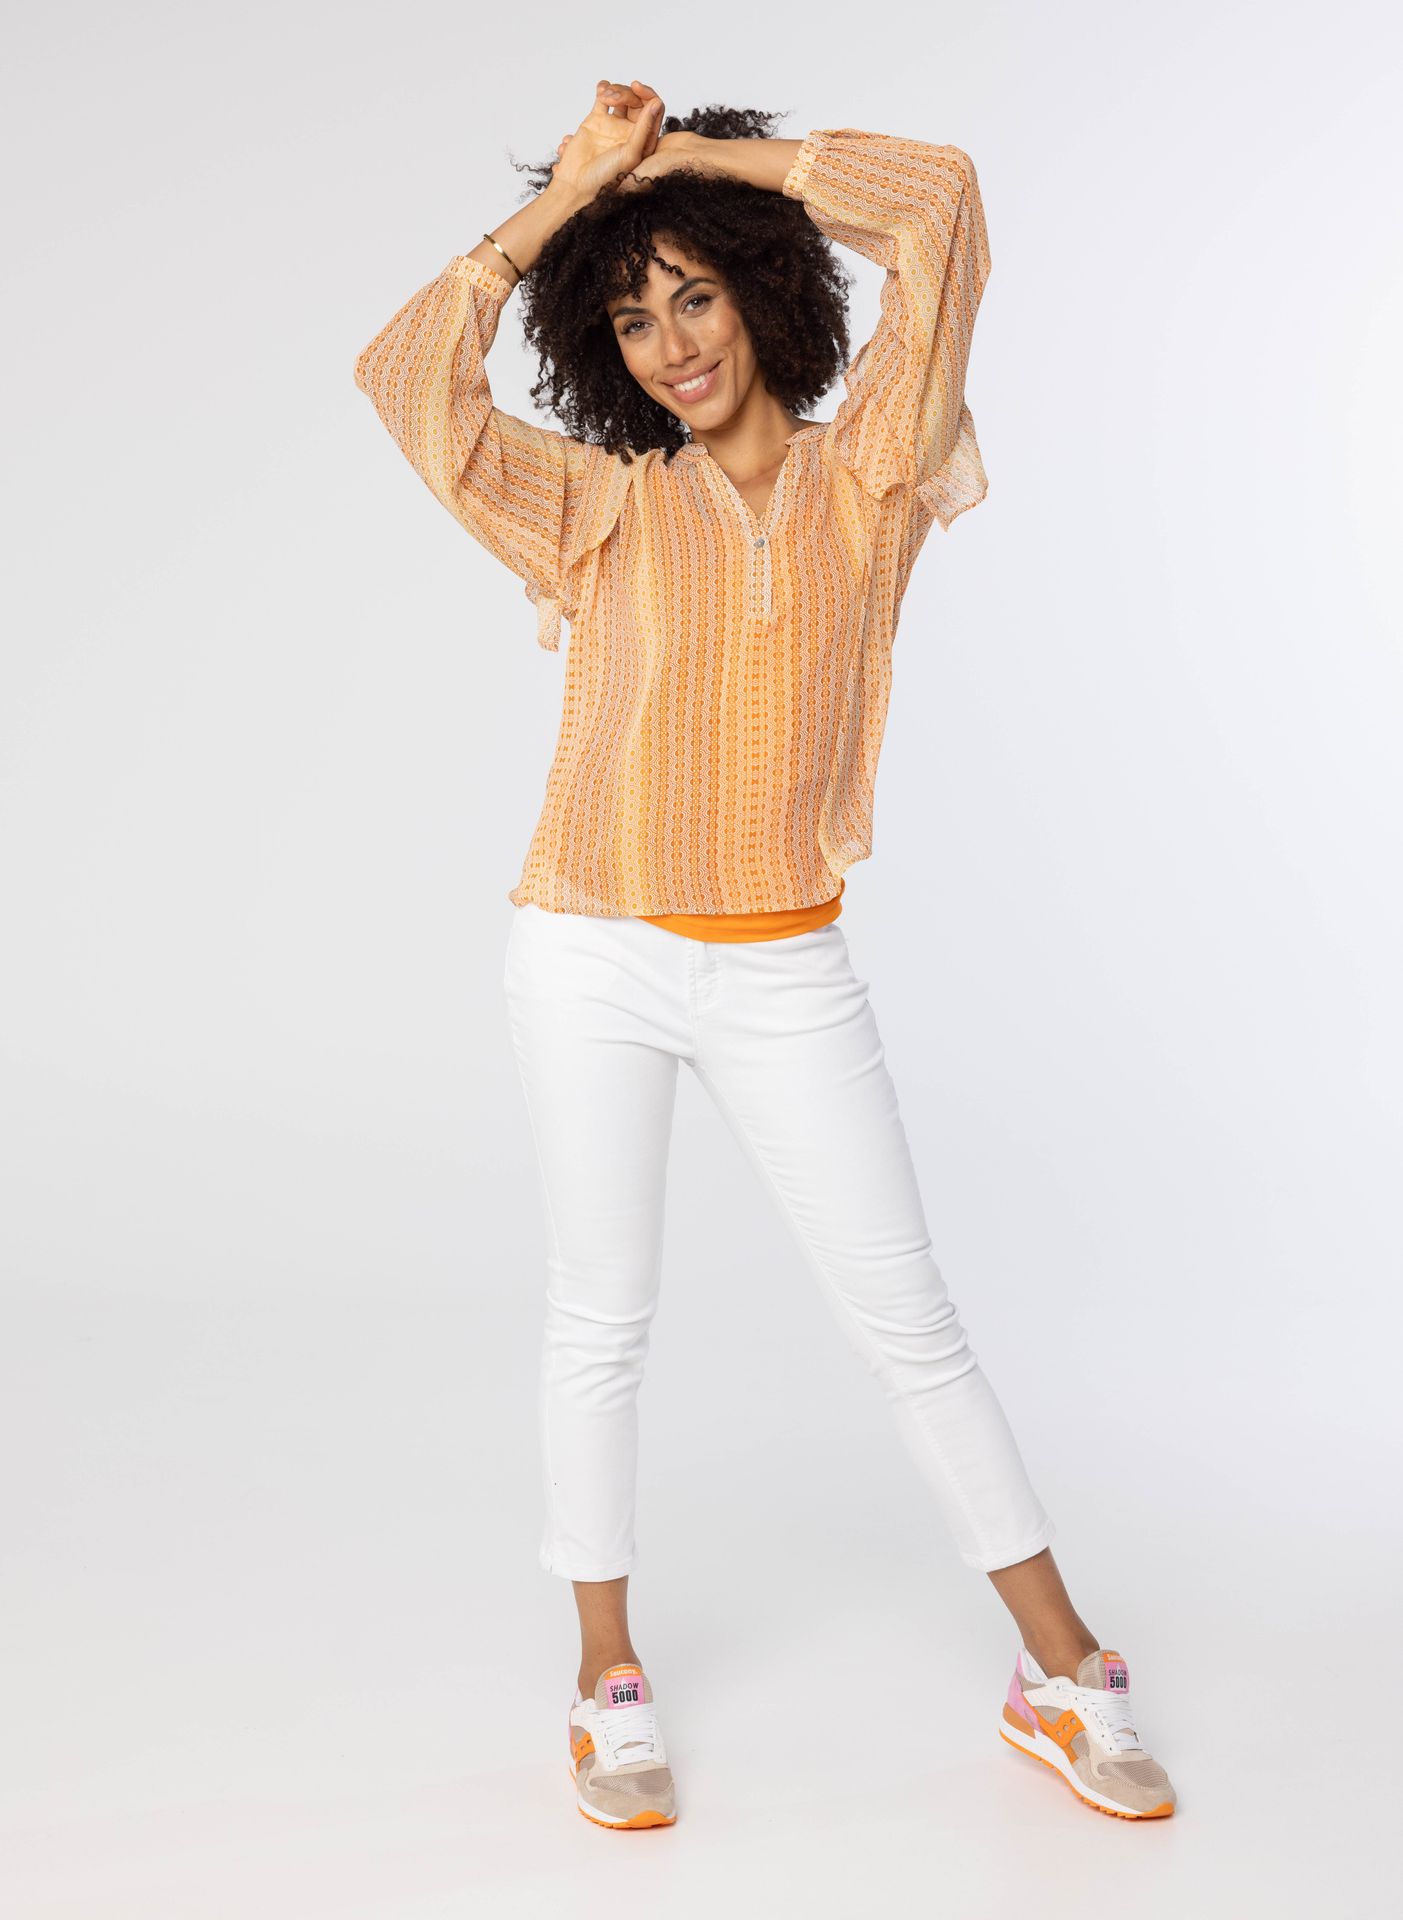 Norah Oranje blouse met ruches orange multicolor 213432-720